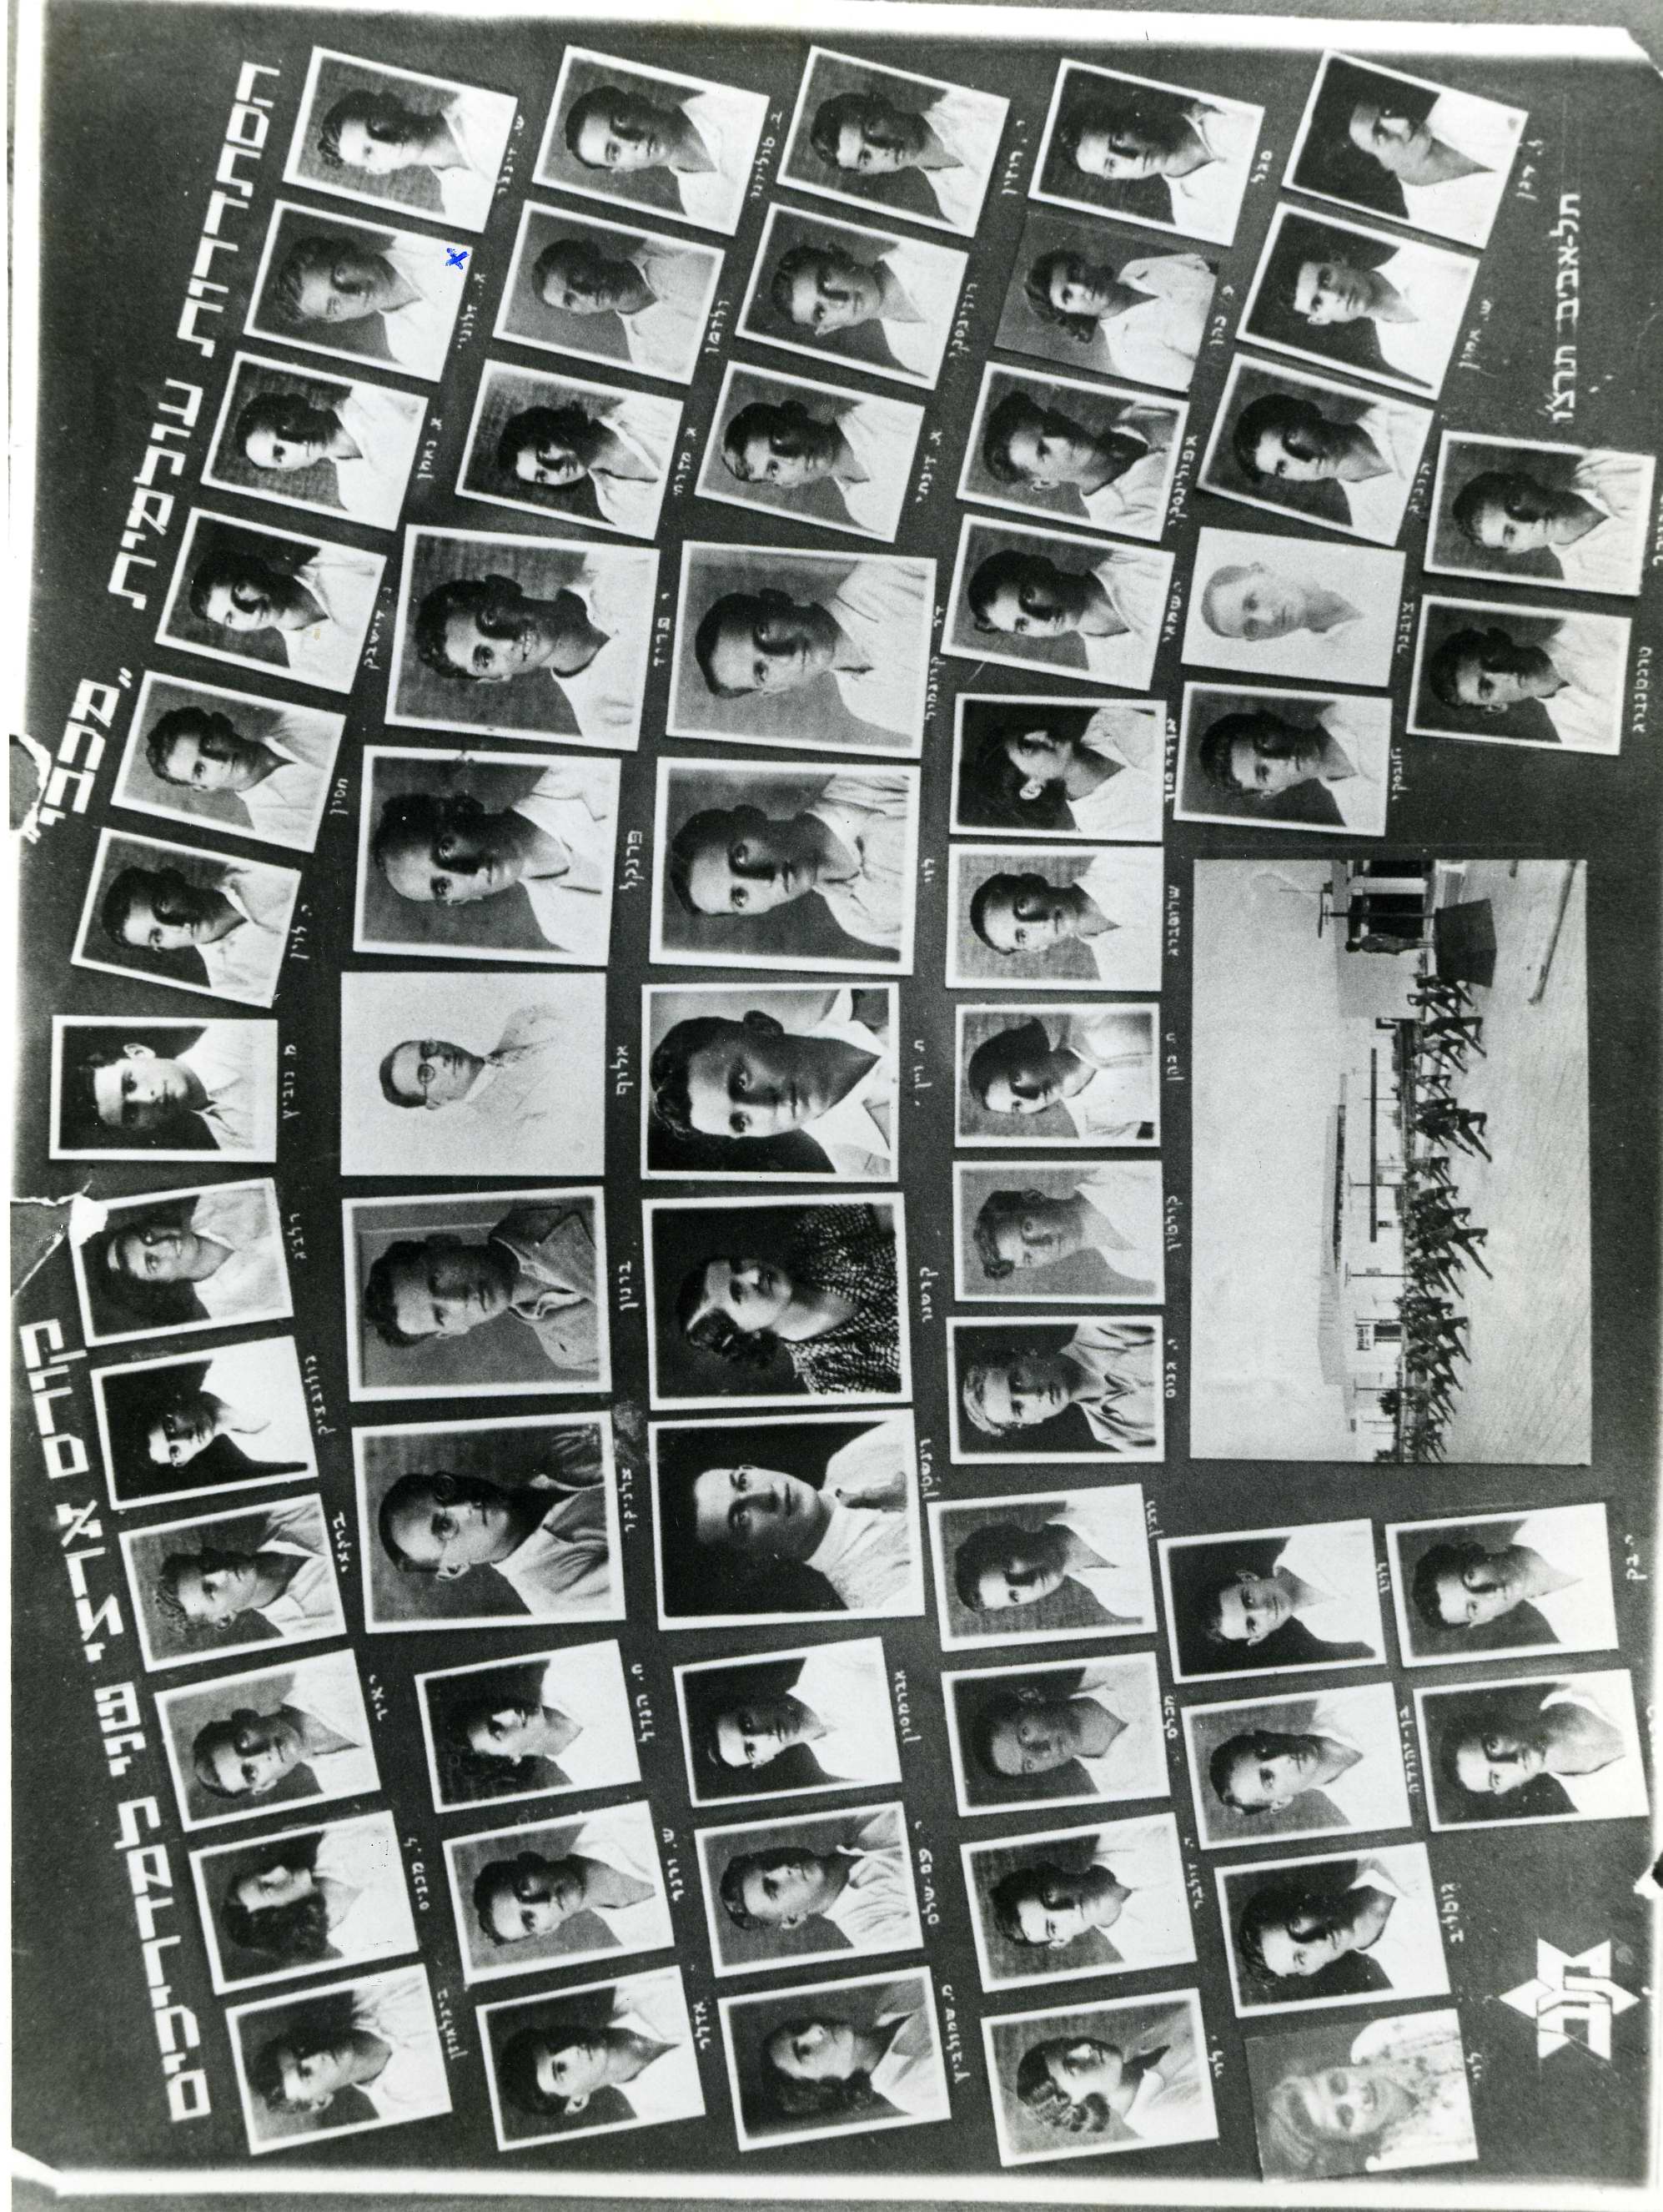 קורס מדריכים שהתקיים בגני התערוכה תל אביב בקיץ 1934 - הגדלת תמונה עם לייטבוקס